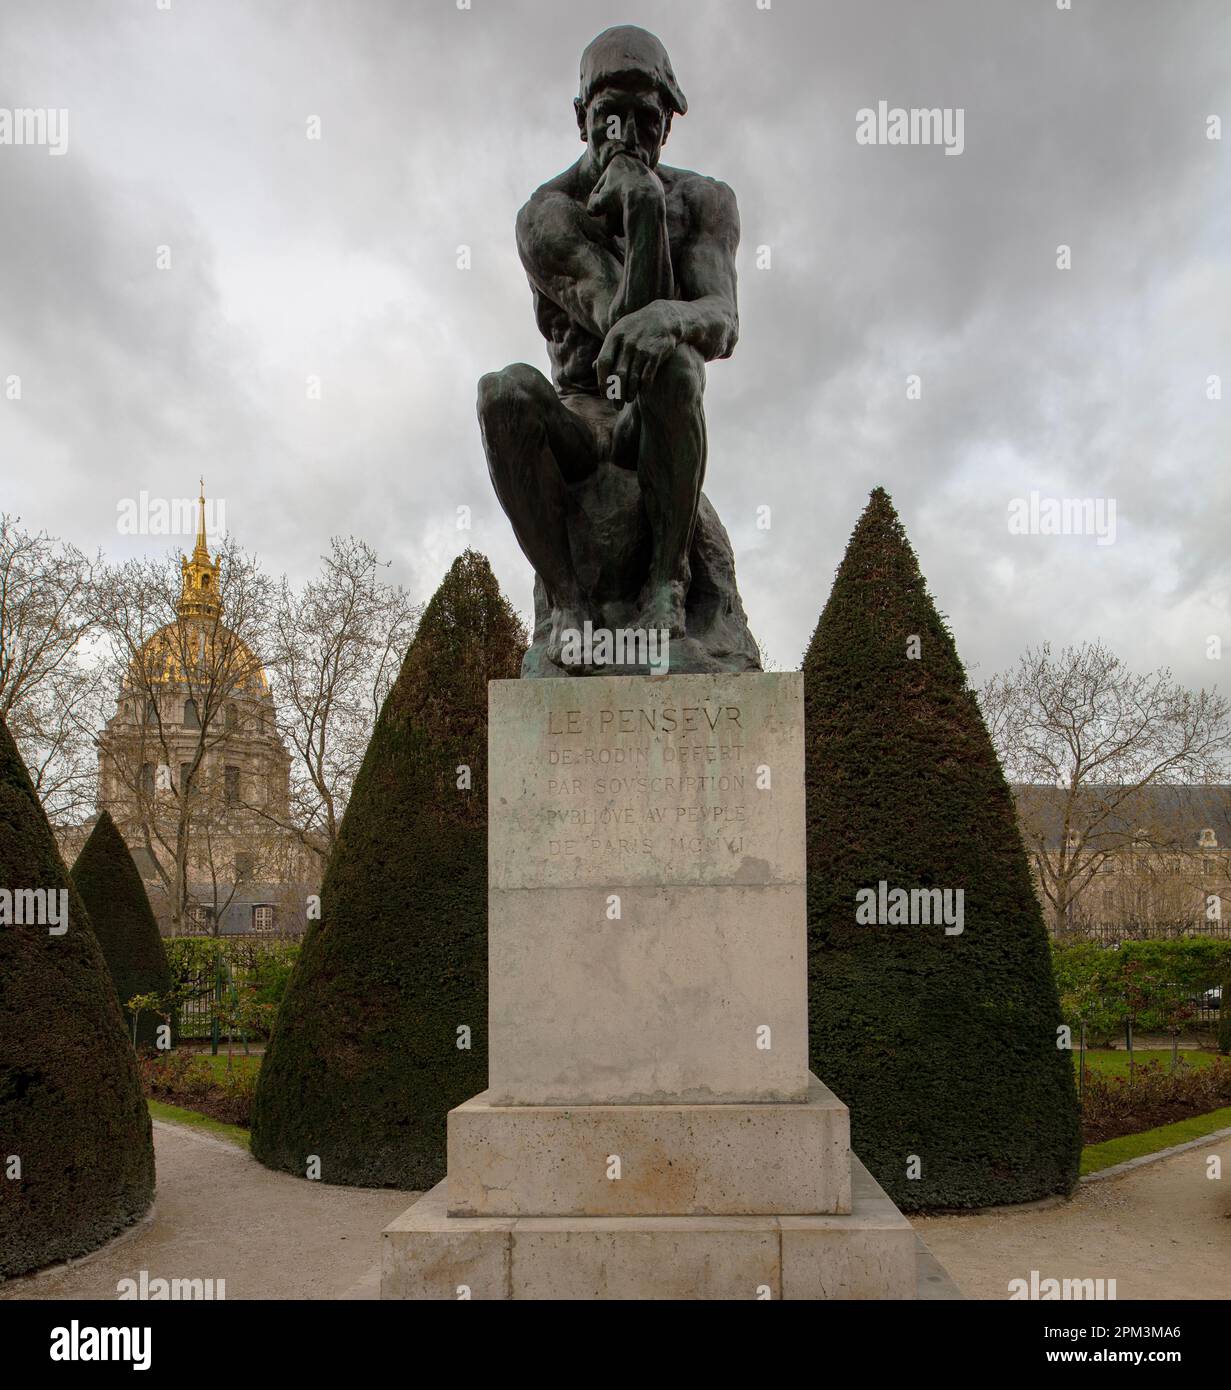 Le Penseur oder The Thinker, Bronzeskulptur von Auguste Rodin, die 1904 erstmals im Garten des Musée Rodin in Paris gegossen wurde Stockfoto